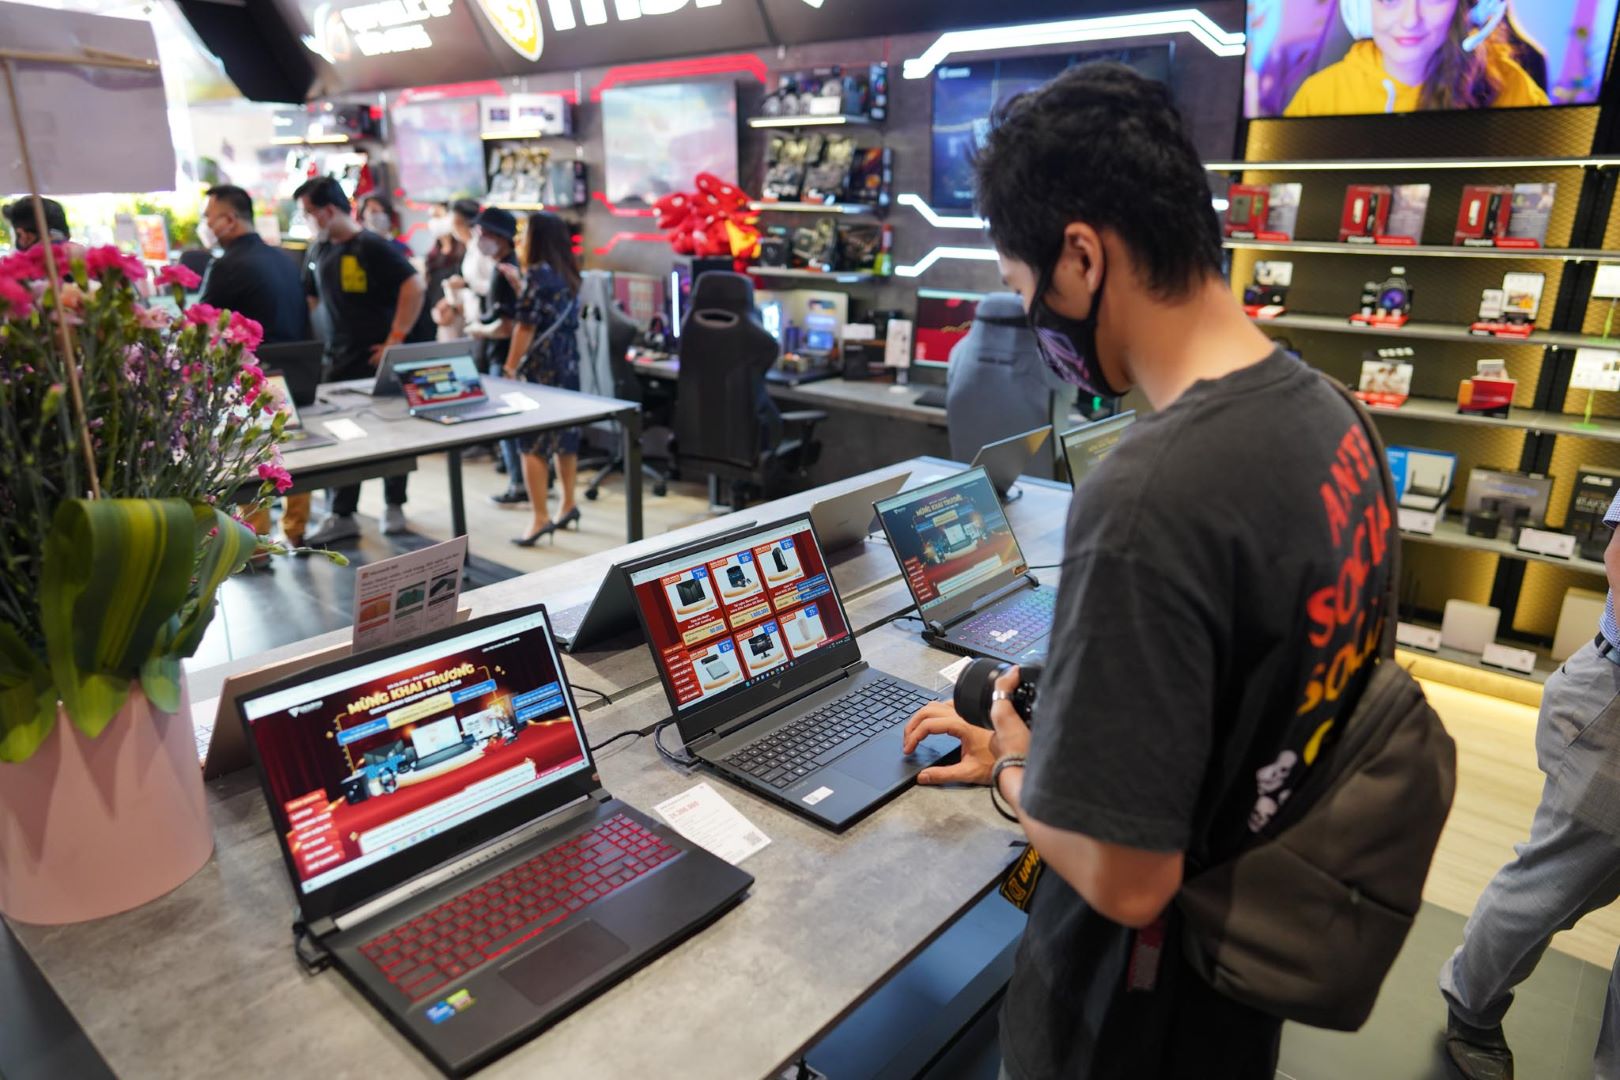 GearVN khai trương showroom Hi-end PC, laptop và gaming gear tại thành phố Thủ Đức